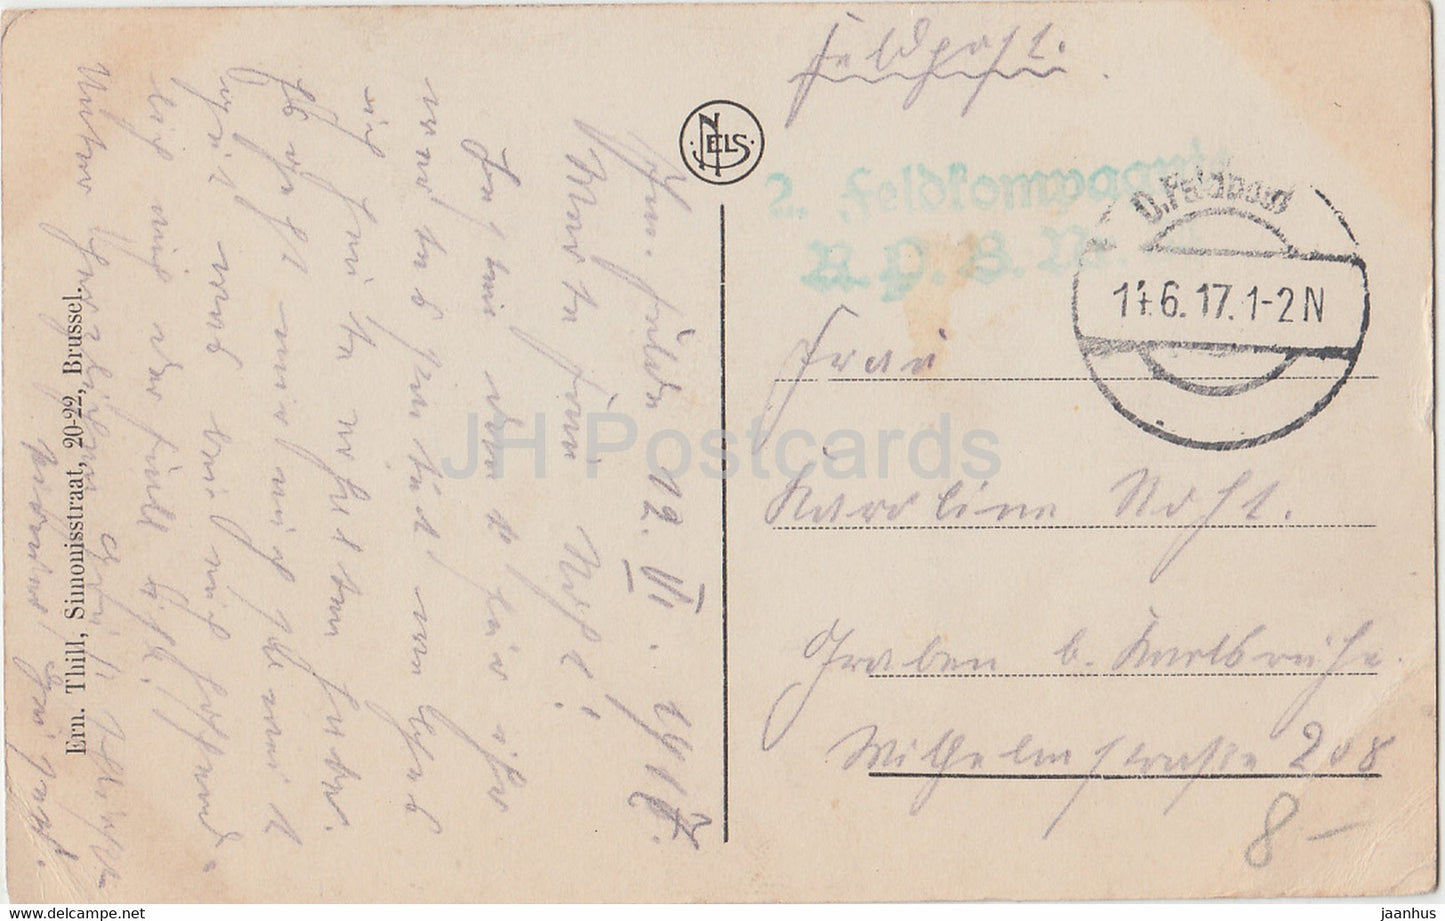 Heyst - Heist - Gedeelte van den Dijk - Feldpost - alte Postkarte - 1917 - Belgien - gebraucht